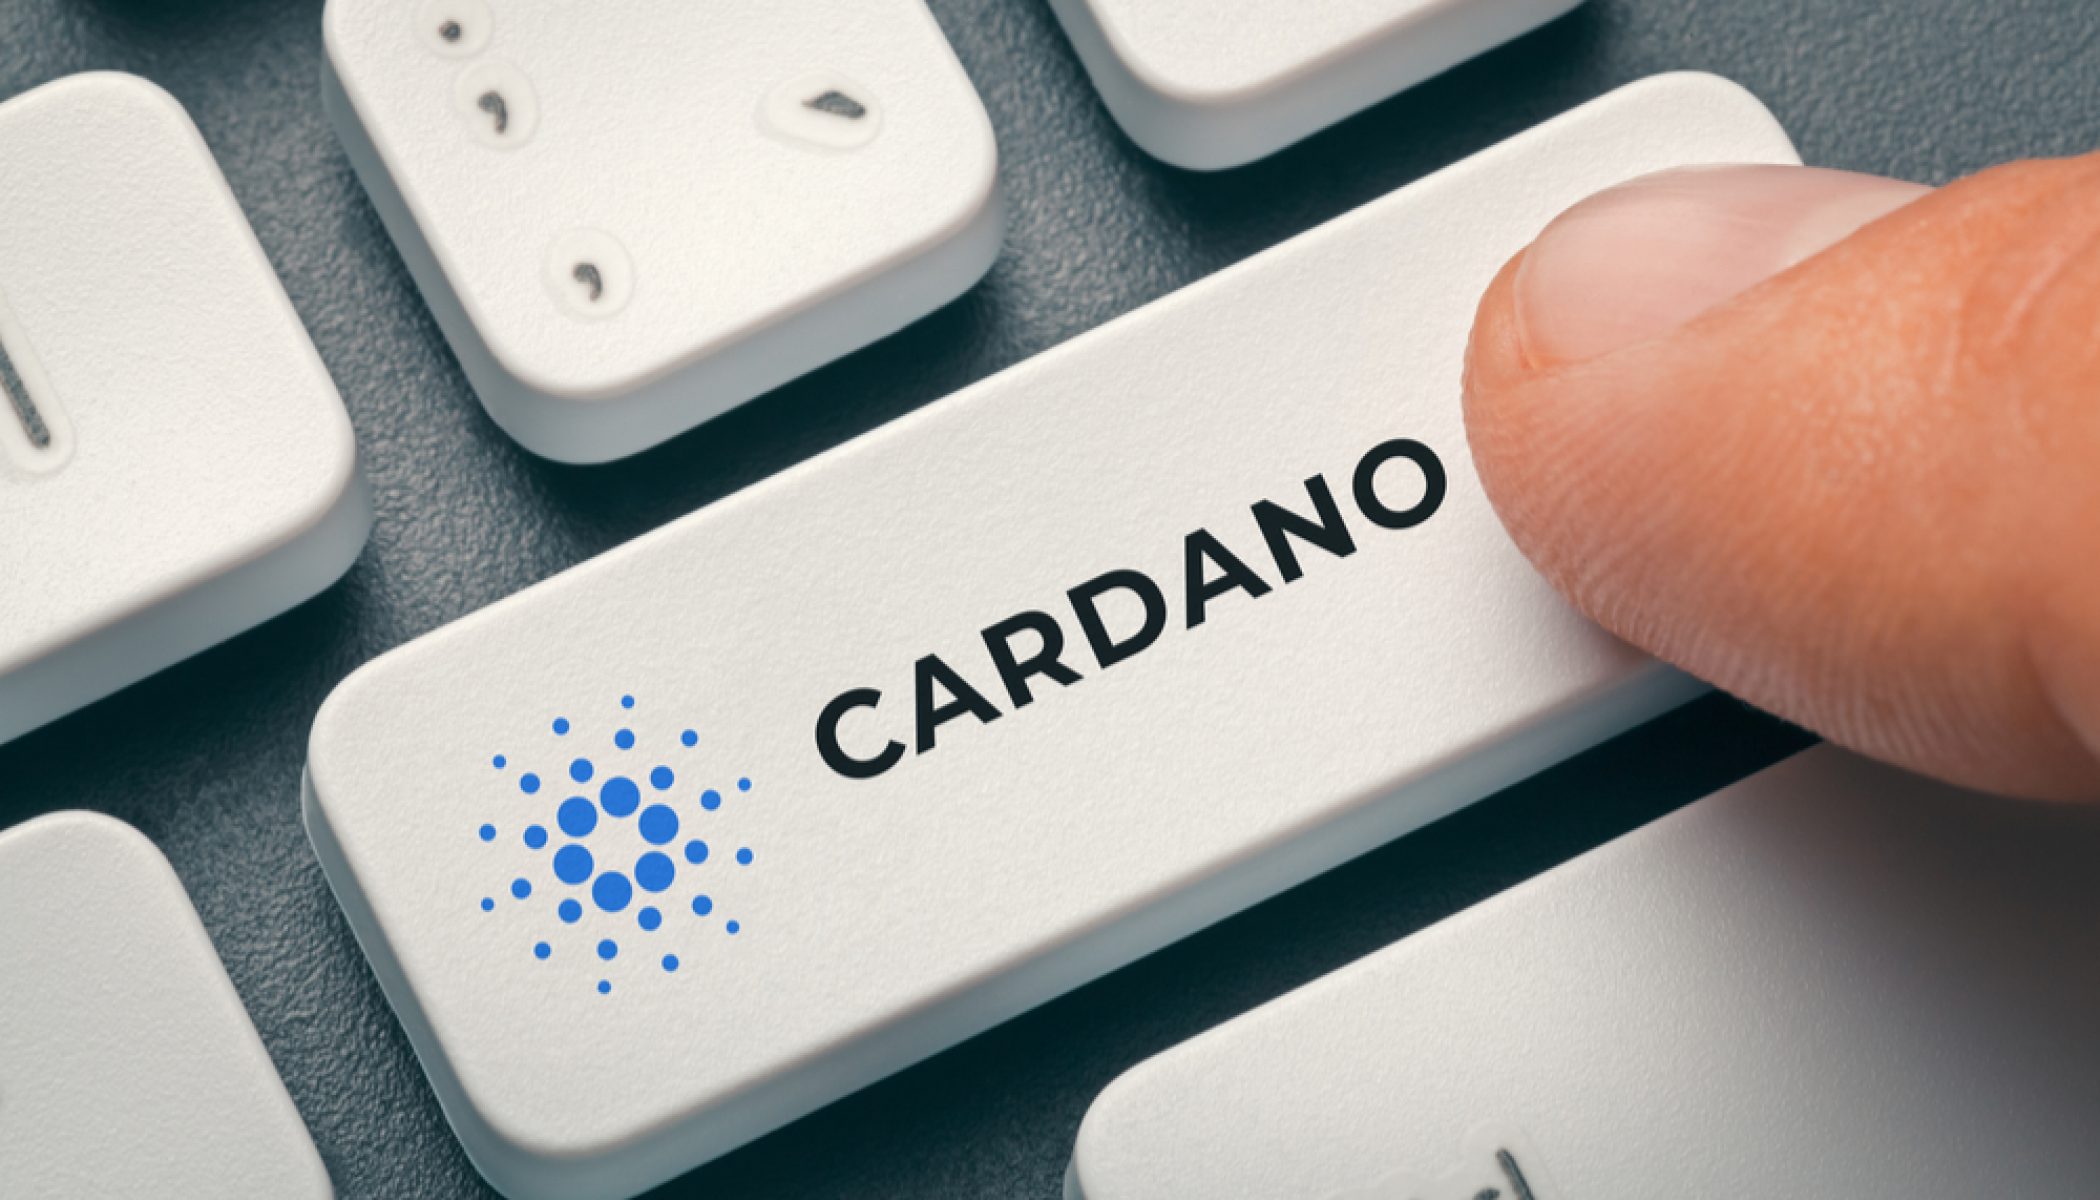 cardano-2100x1200-1.jpg